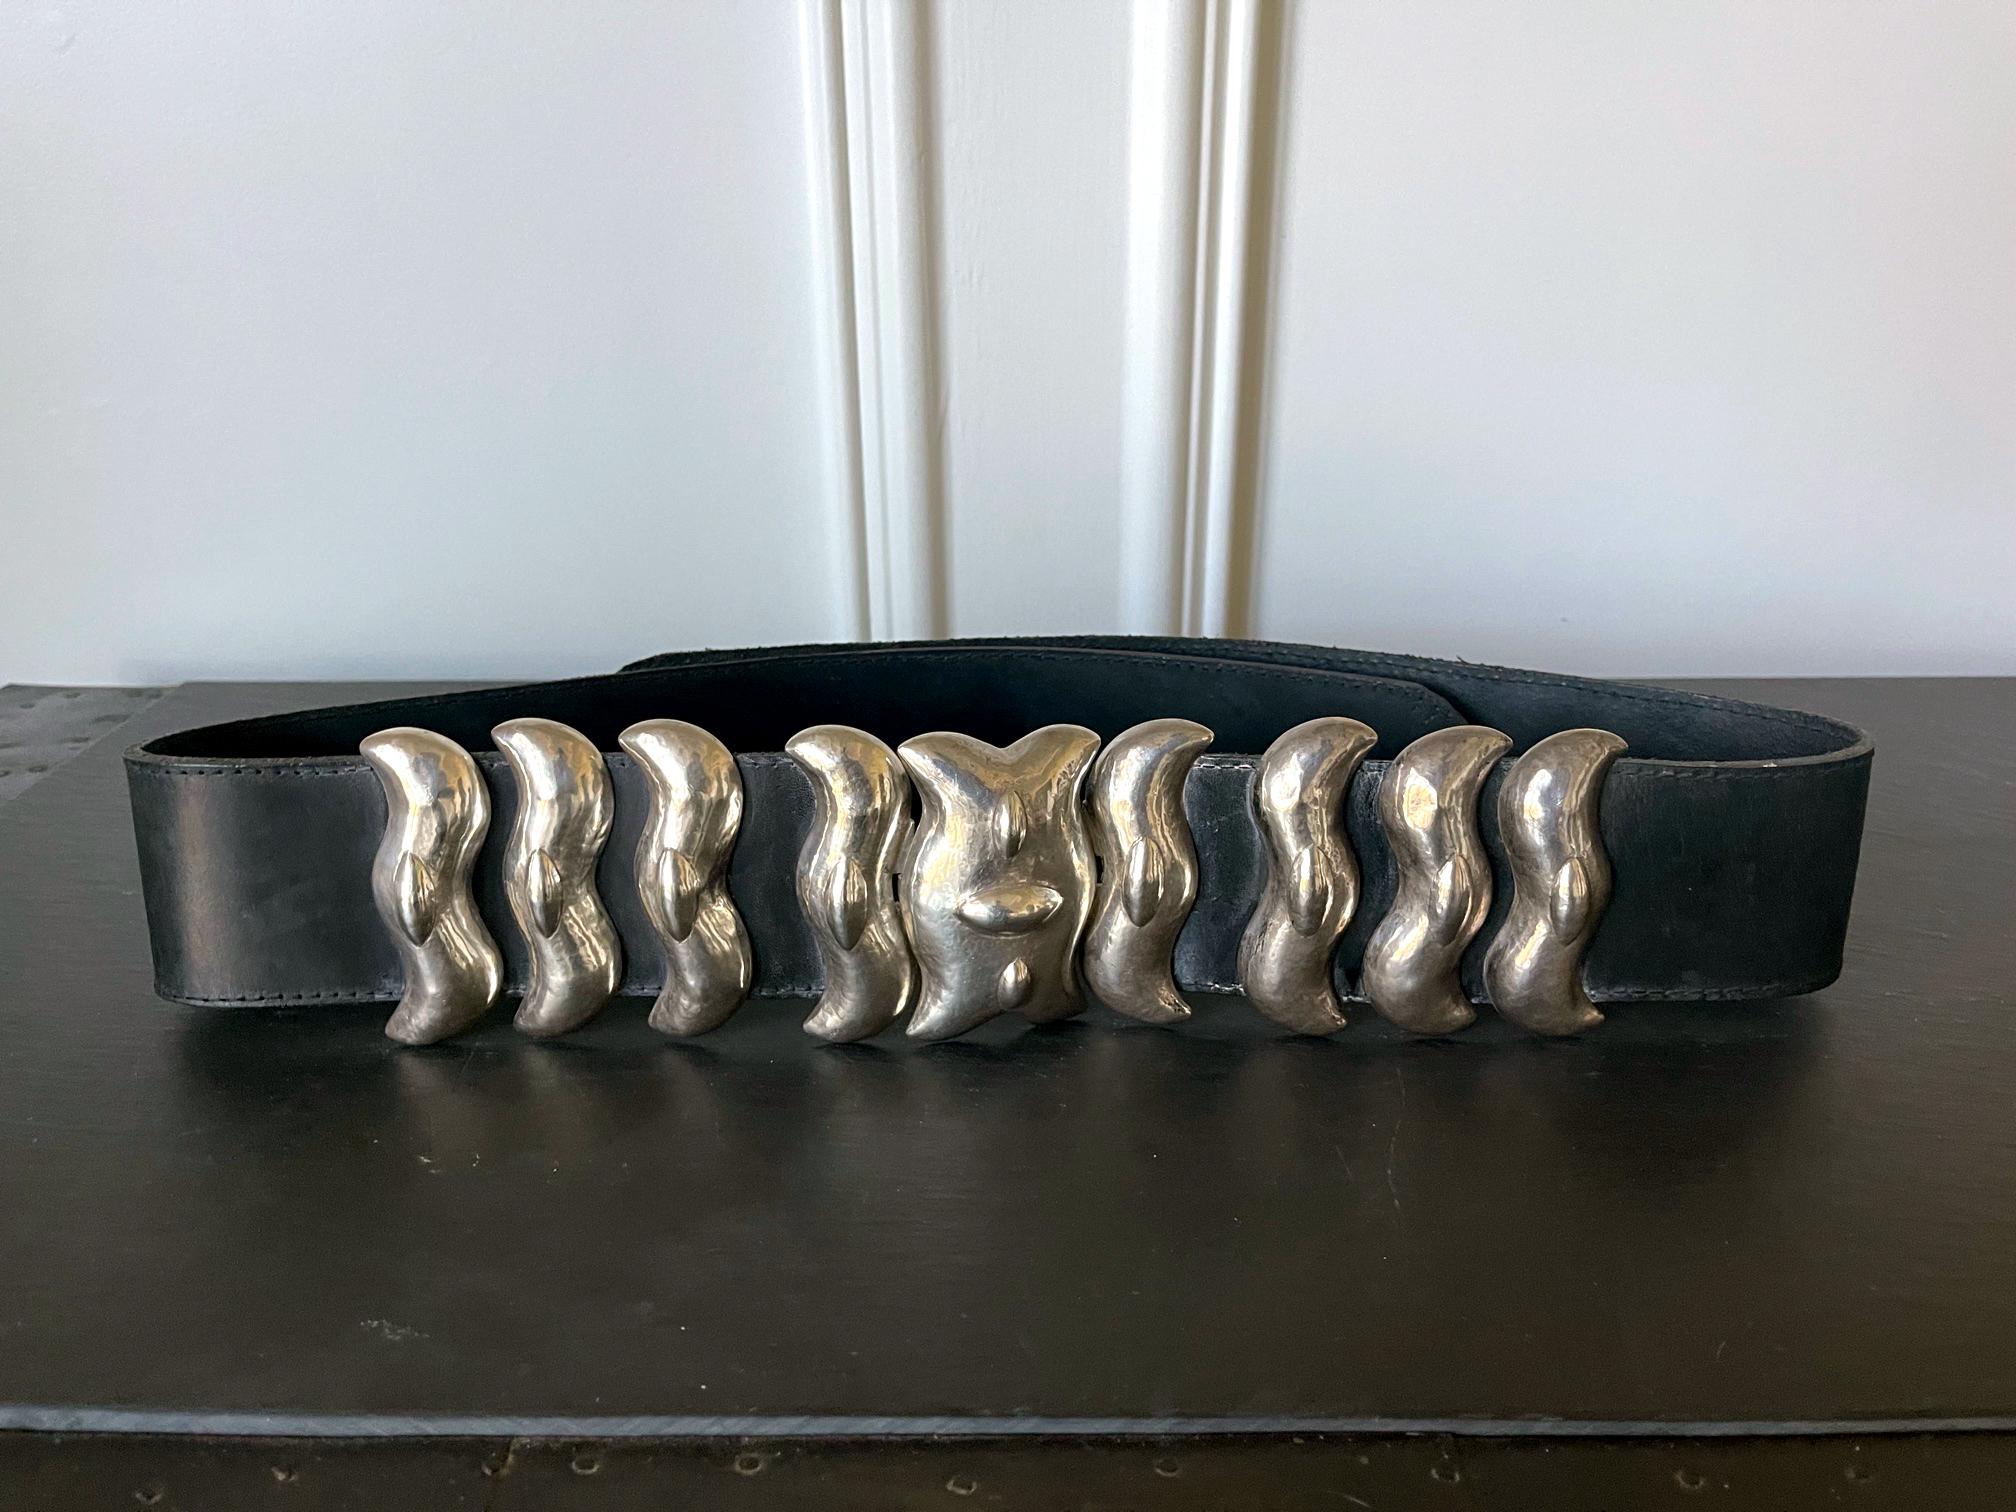 Ein breiter Ledergürtel mit einer Schnalle aus Sterlingsilber und passenden Ornamenten, hergestellt von Graziella Laffi, Lima, Peru, um 1965. Die auffälligen Silberartikel zeigen die Form und das Motiv, die in der präkolumbianischen Kultur